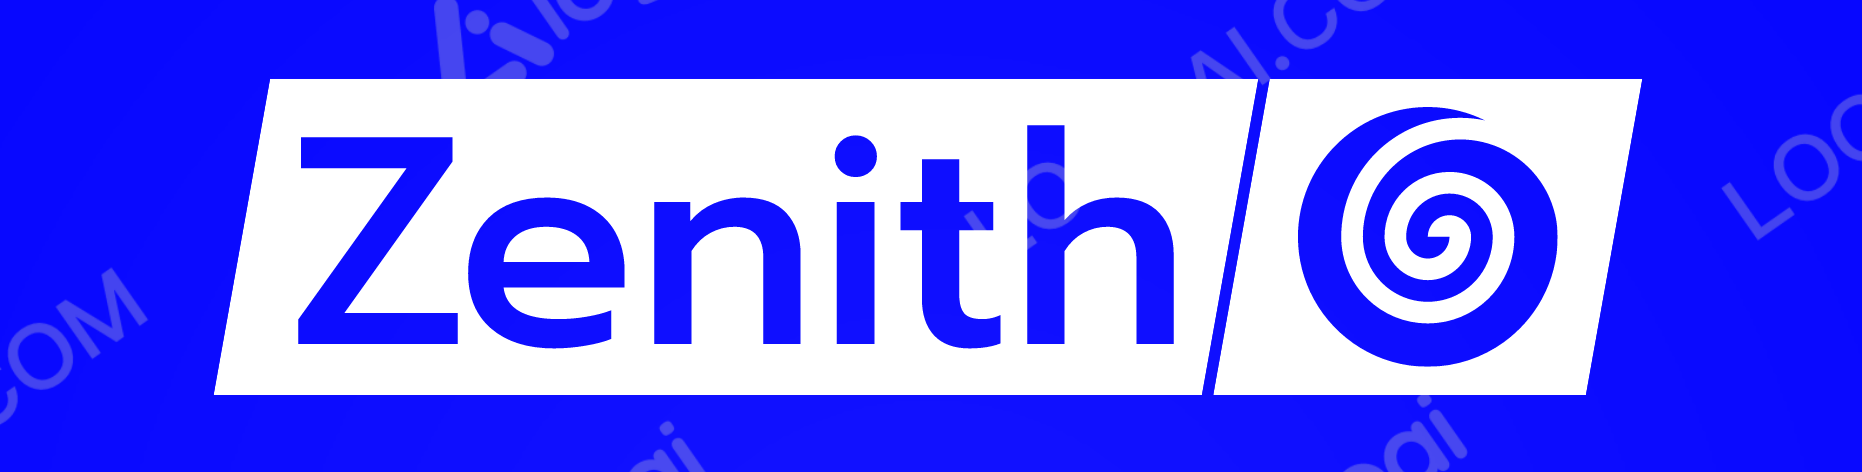 an abstract logo example